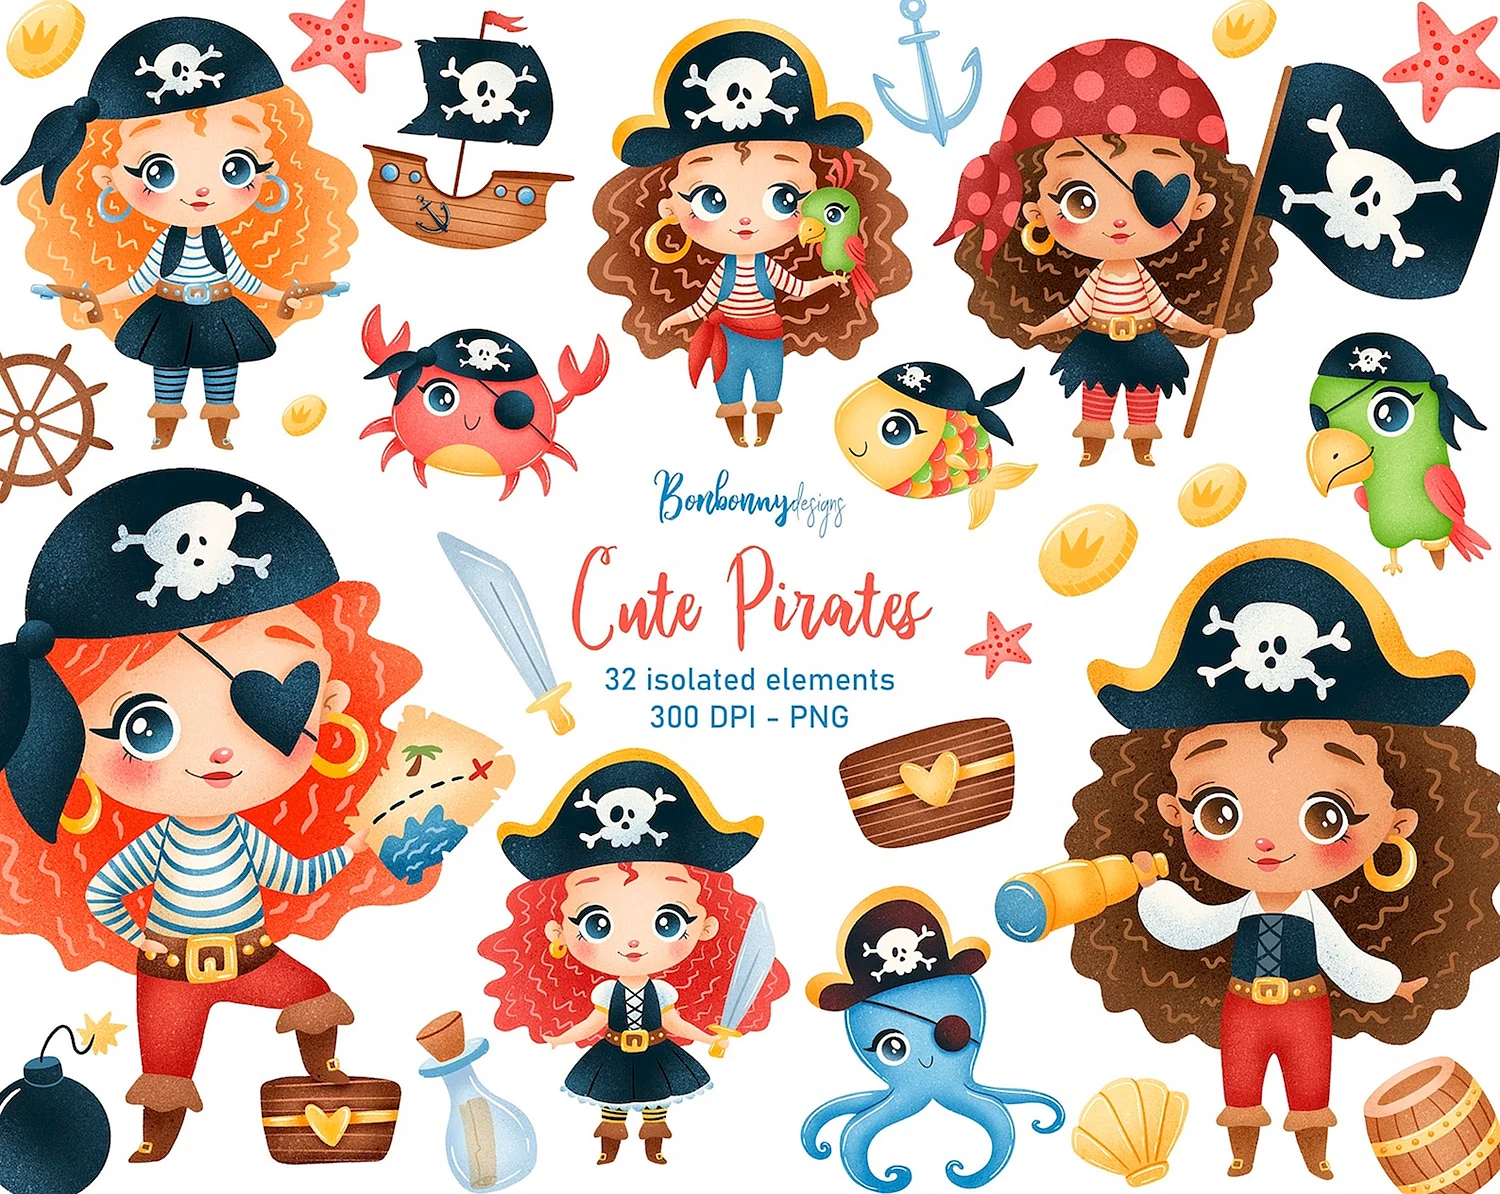 Мульт про пиратов девочек